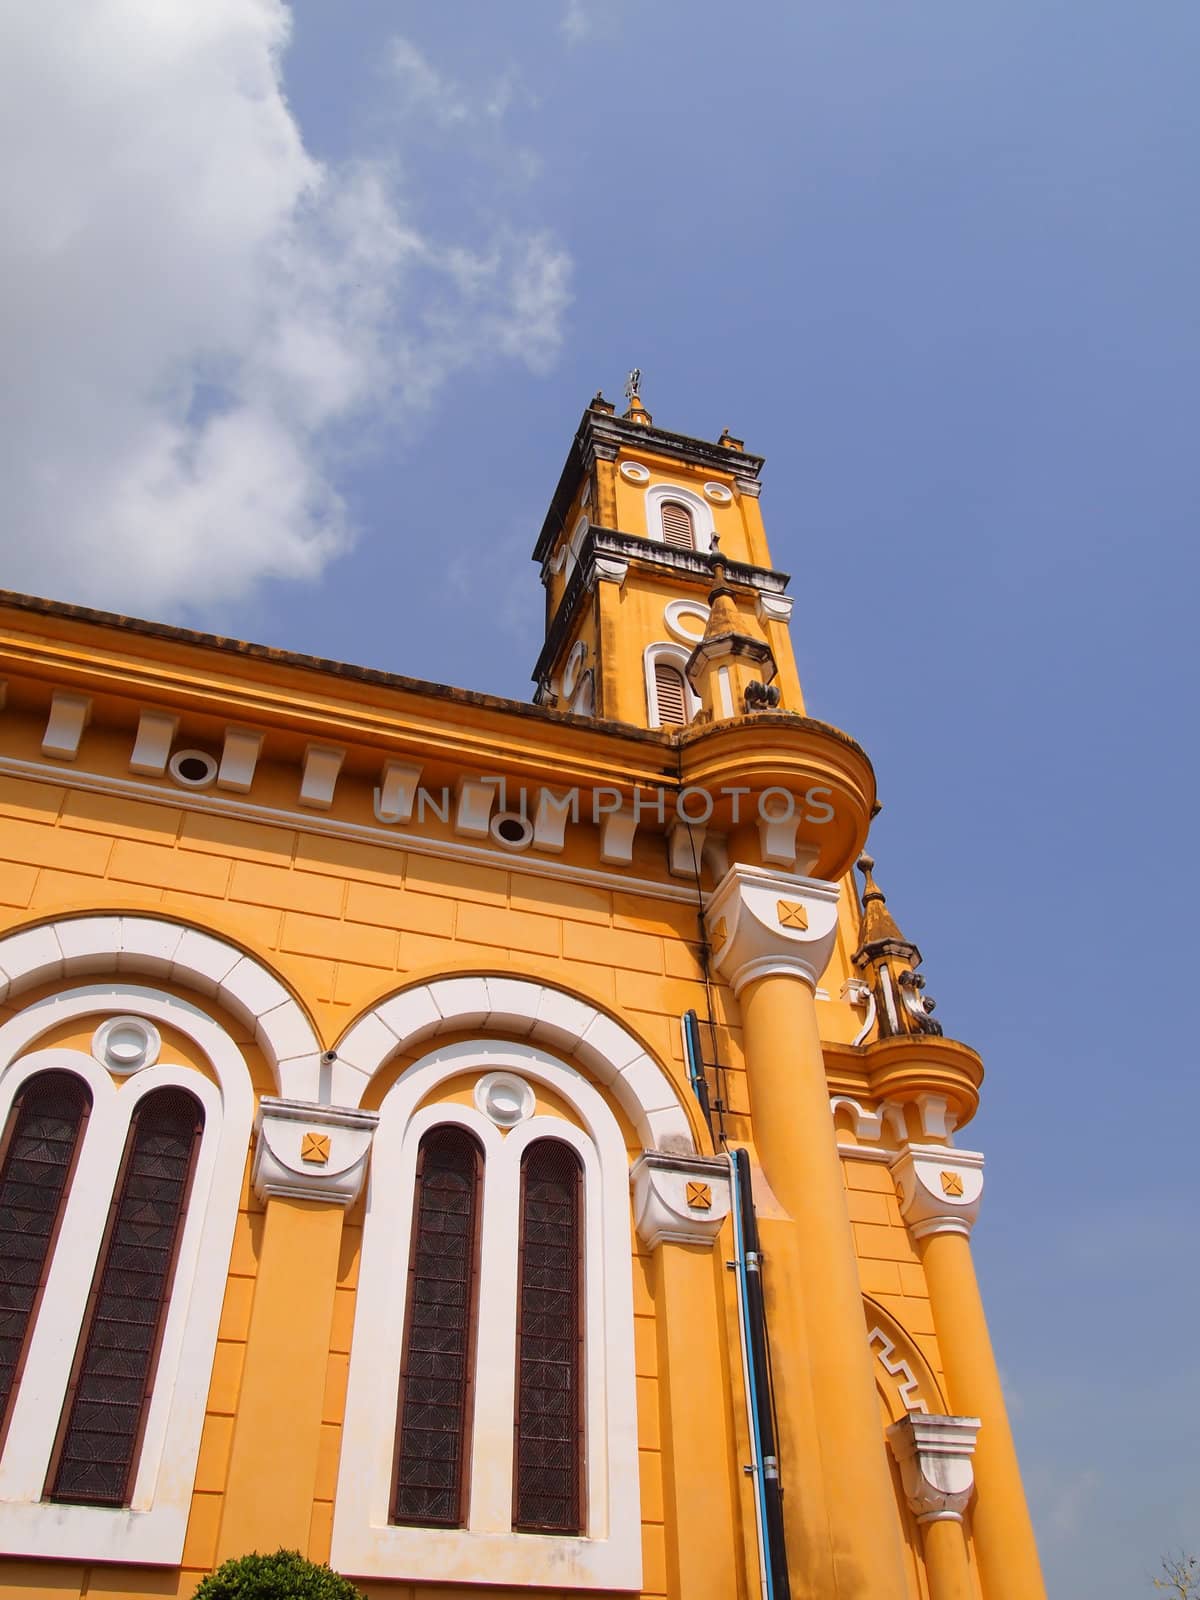 St. Joseph Church In Phra Nakorn Si Ayutthaya, Thailand by siraanamwong